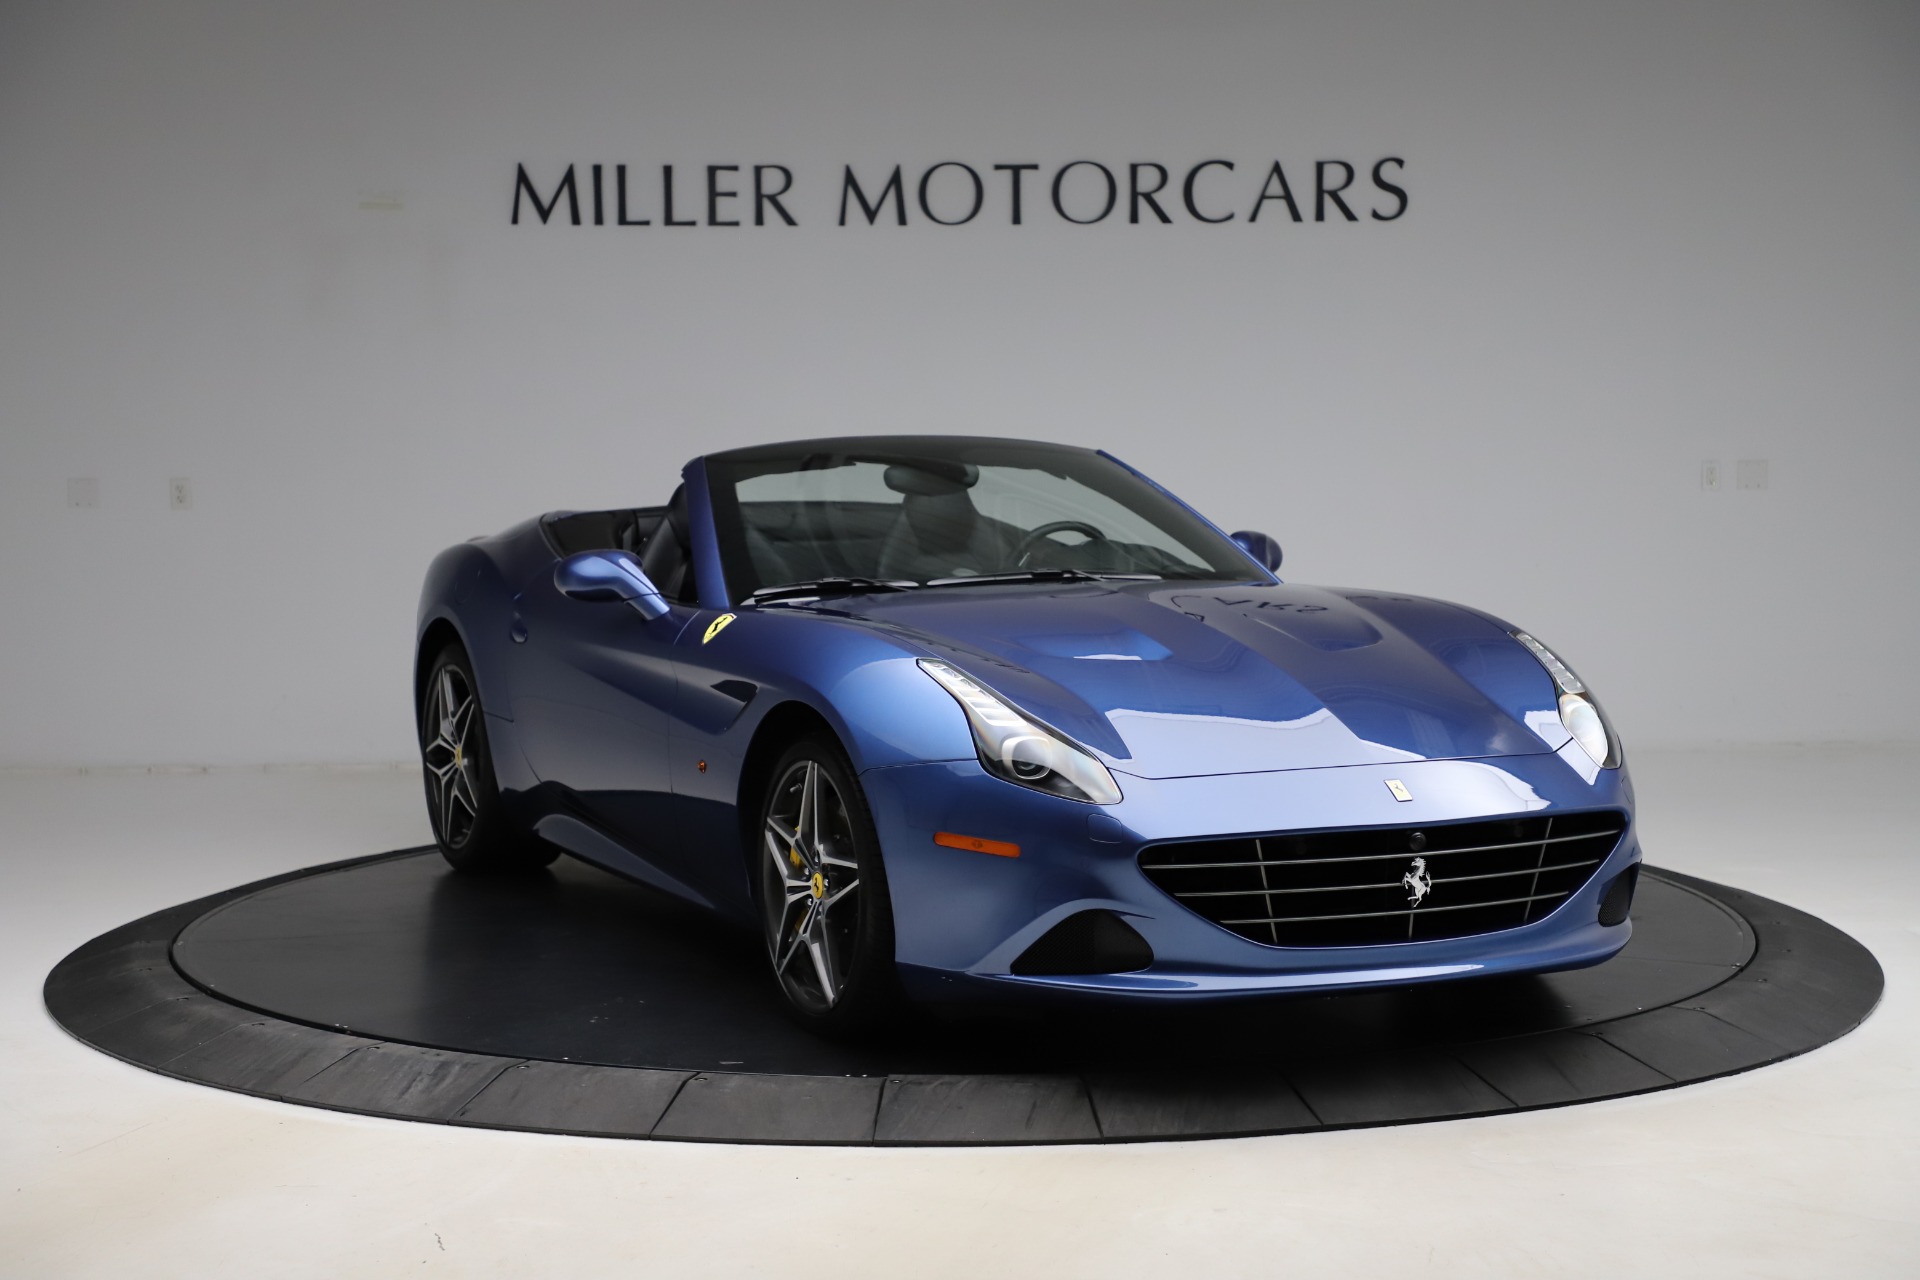 PreOwned 2018 Ferrari California T For Sale () Miller Motorcars